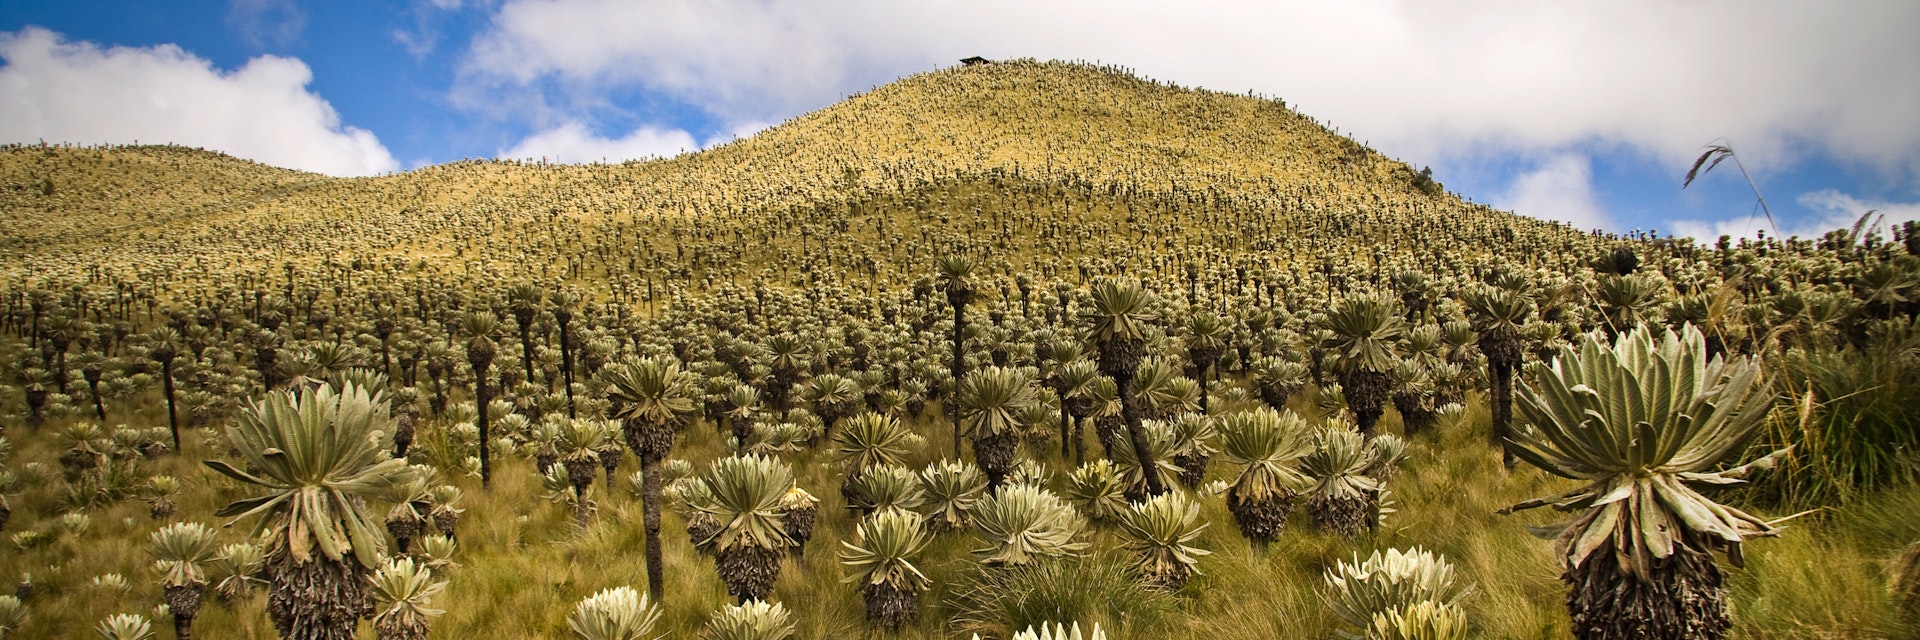 Landscape in El Angel ecological reserve in Ecuador.